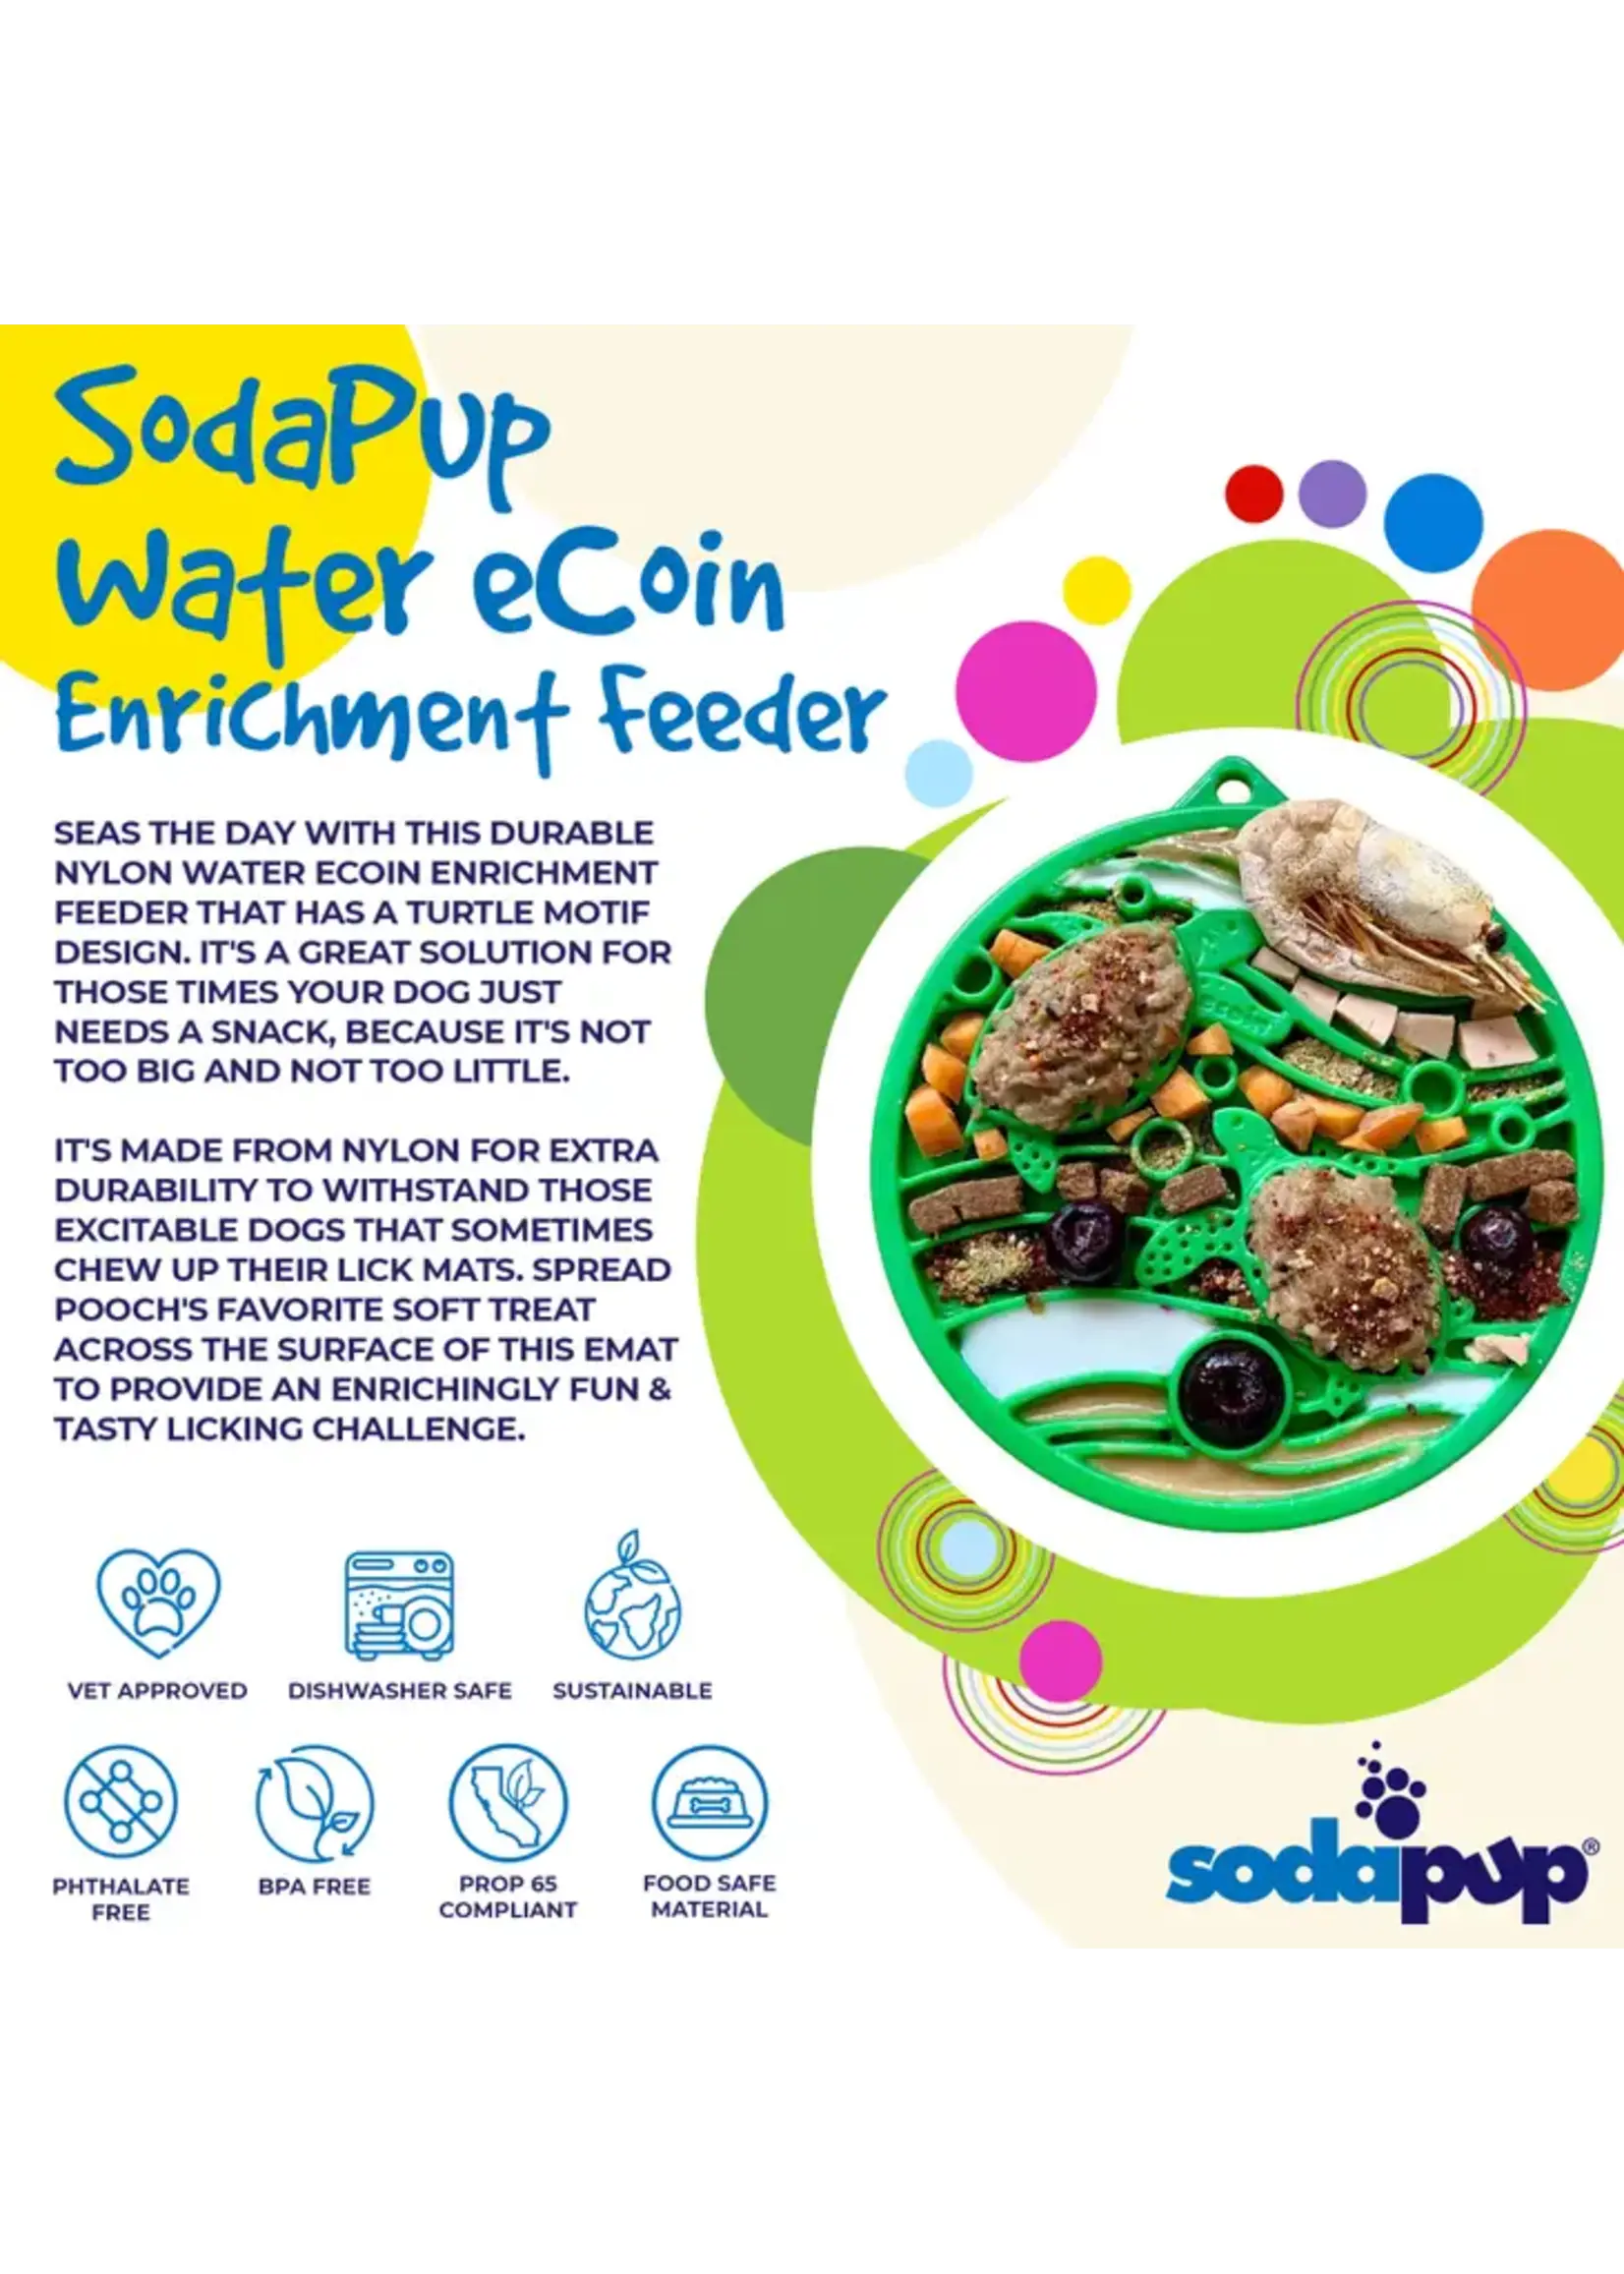 SodaPup „Water” nylon eCoin duurzame verrijking snackmunt